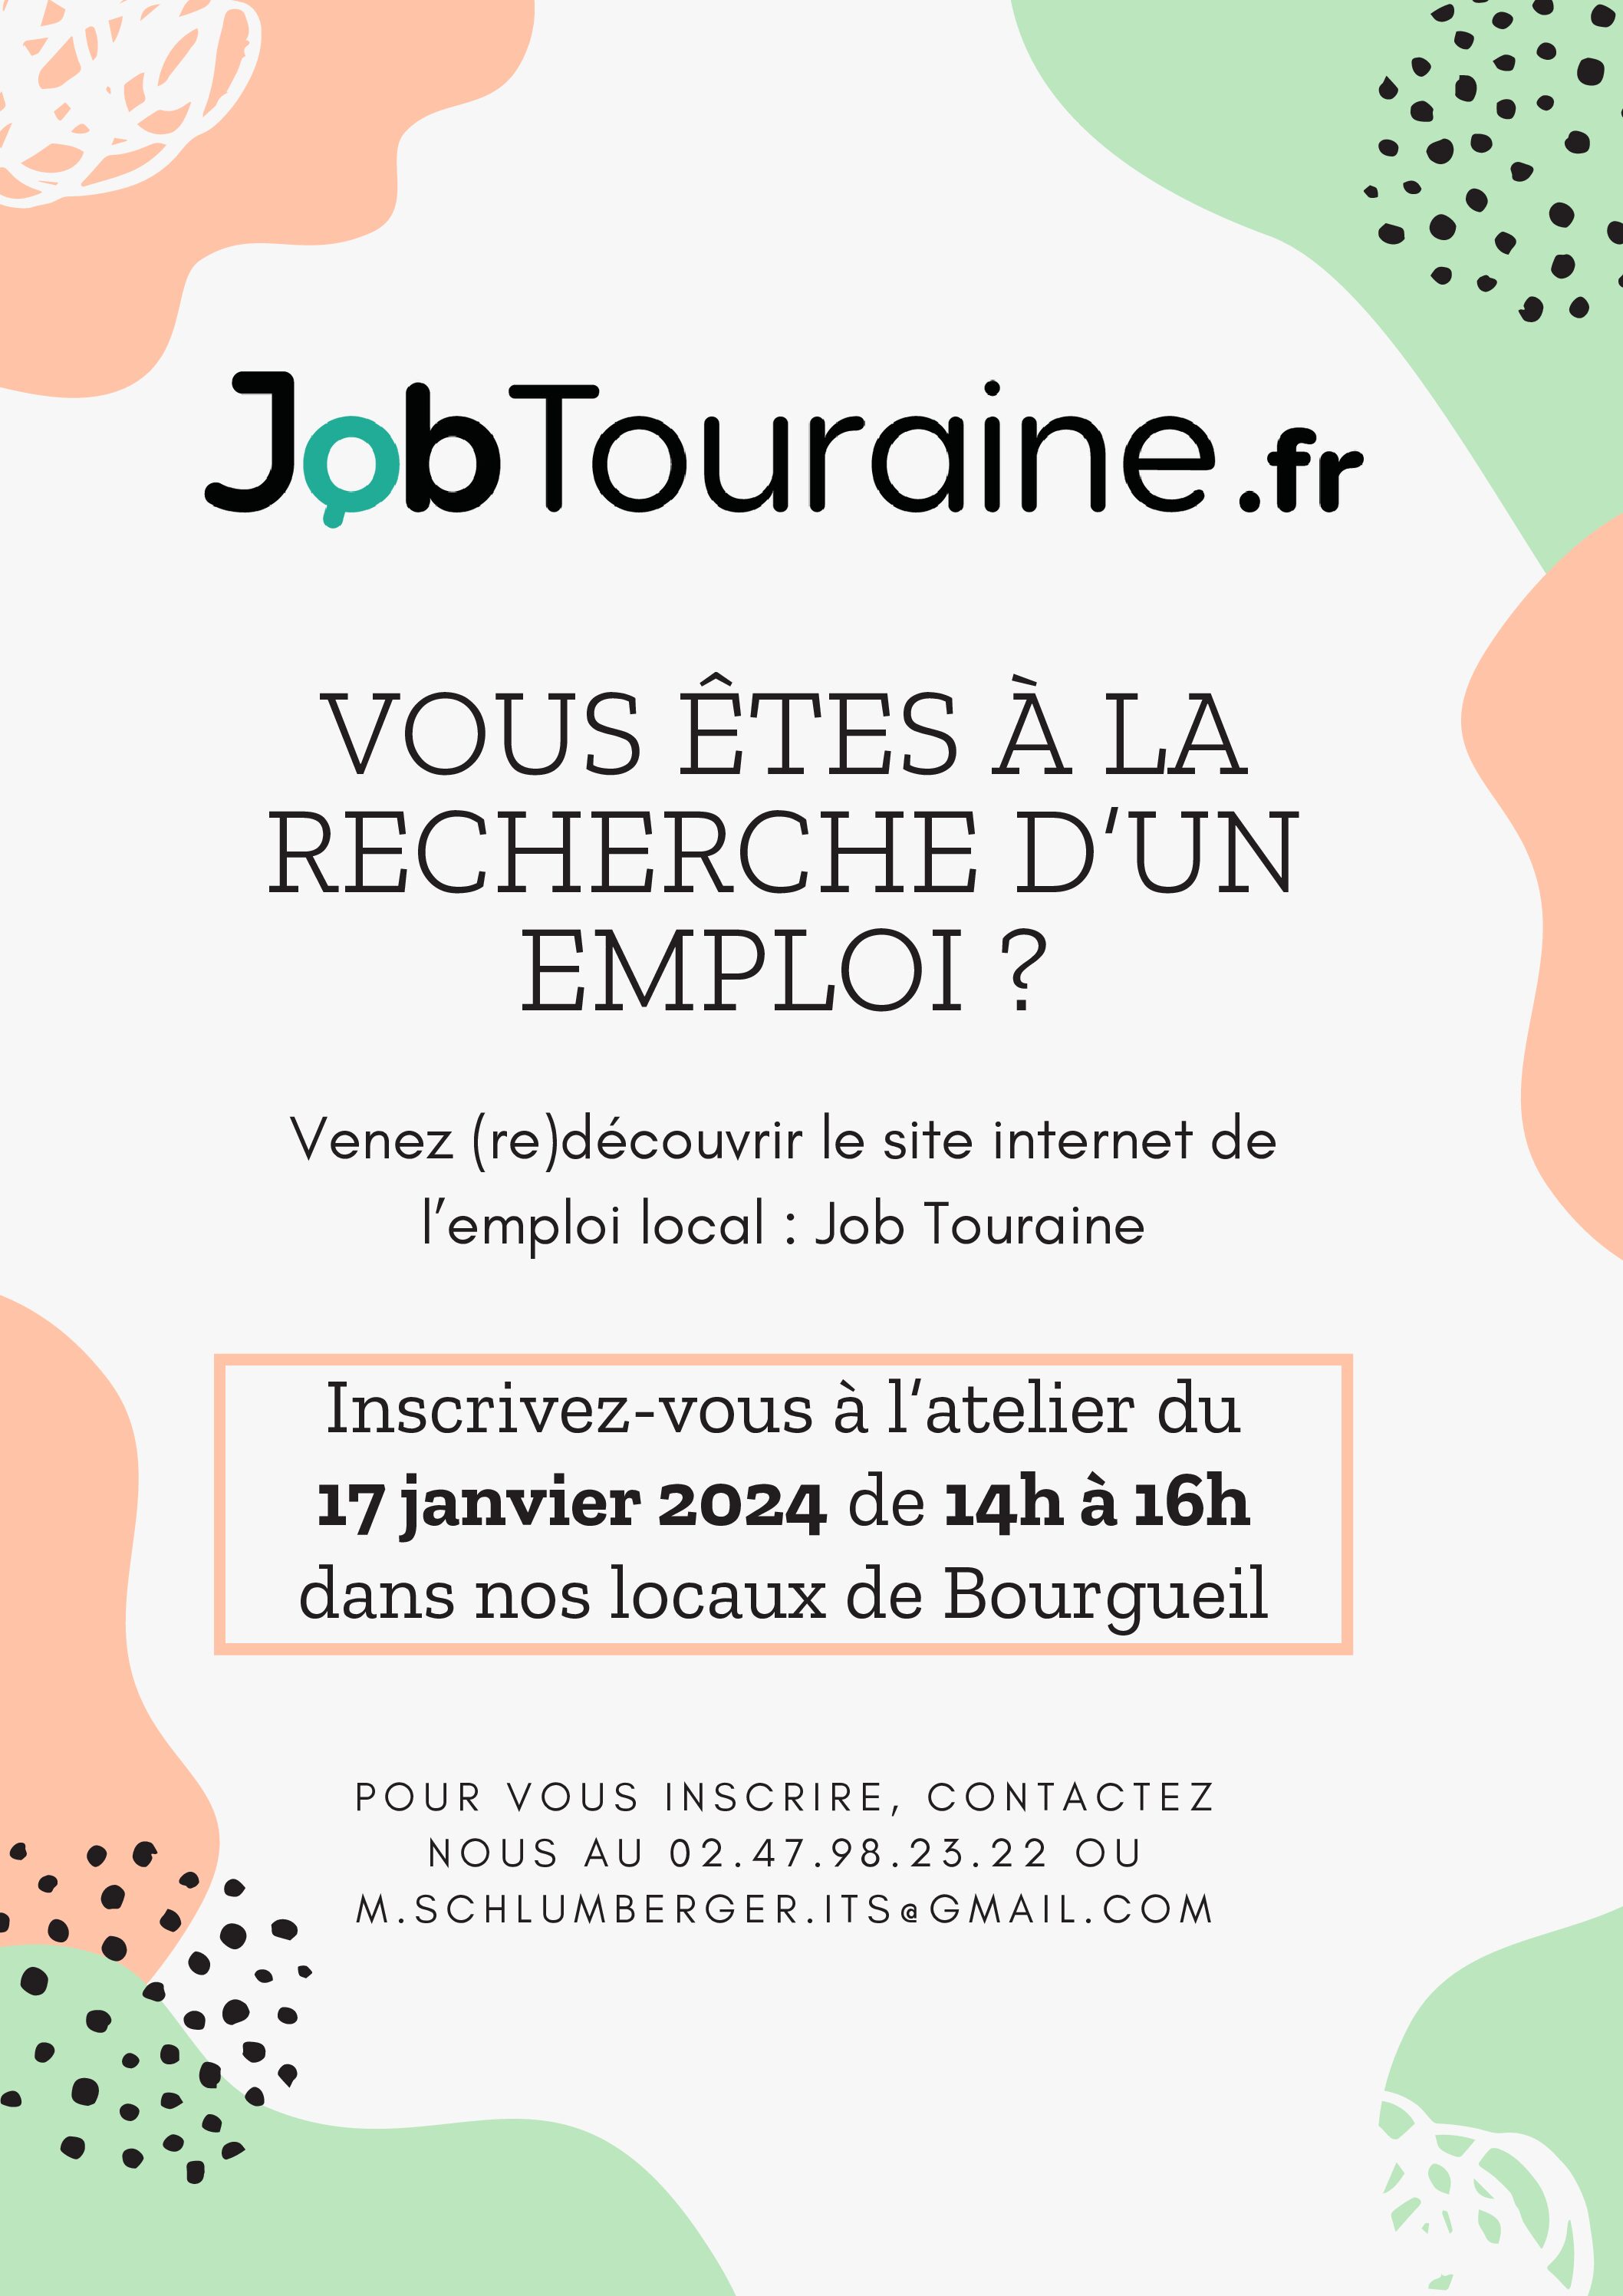 Vous êtes à la recherche d'un emploi ? Venez participer à l'atelier "Job Touraine".